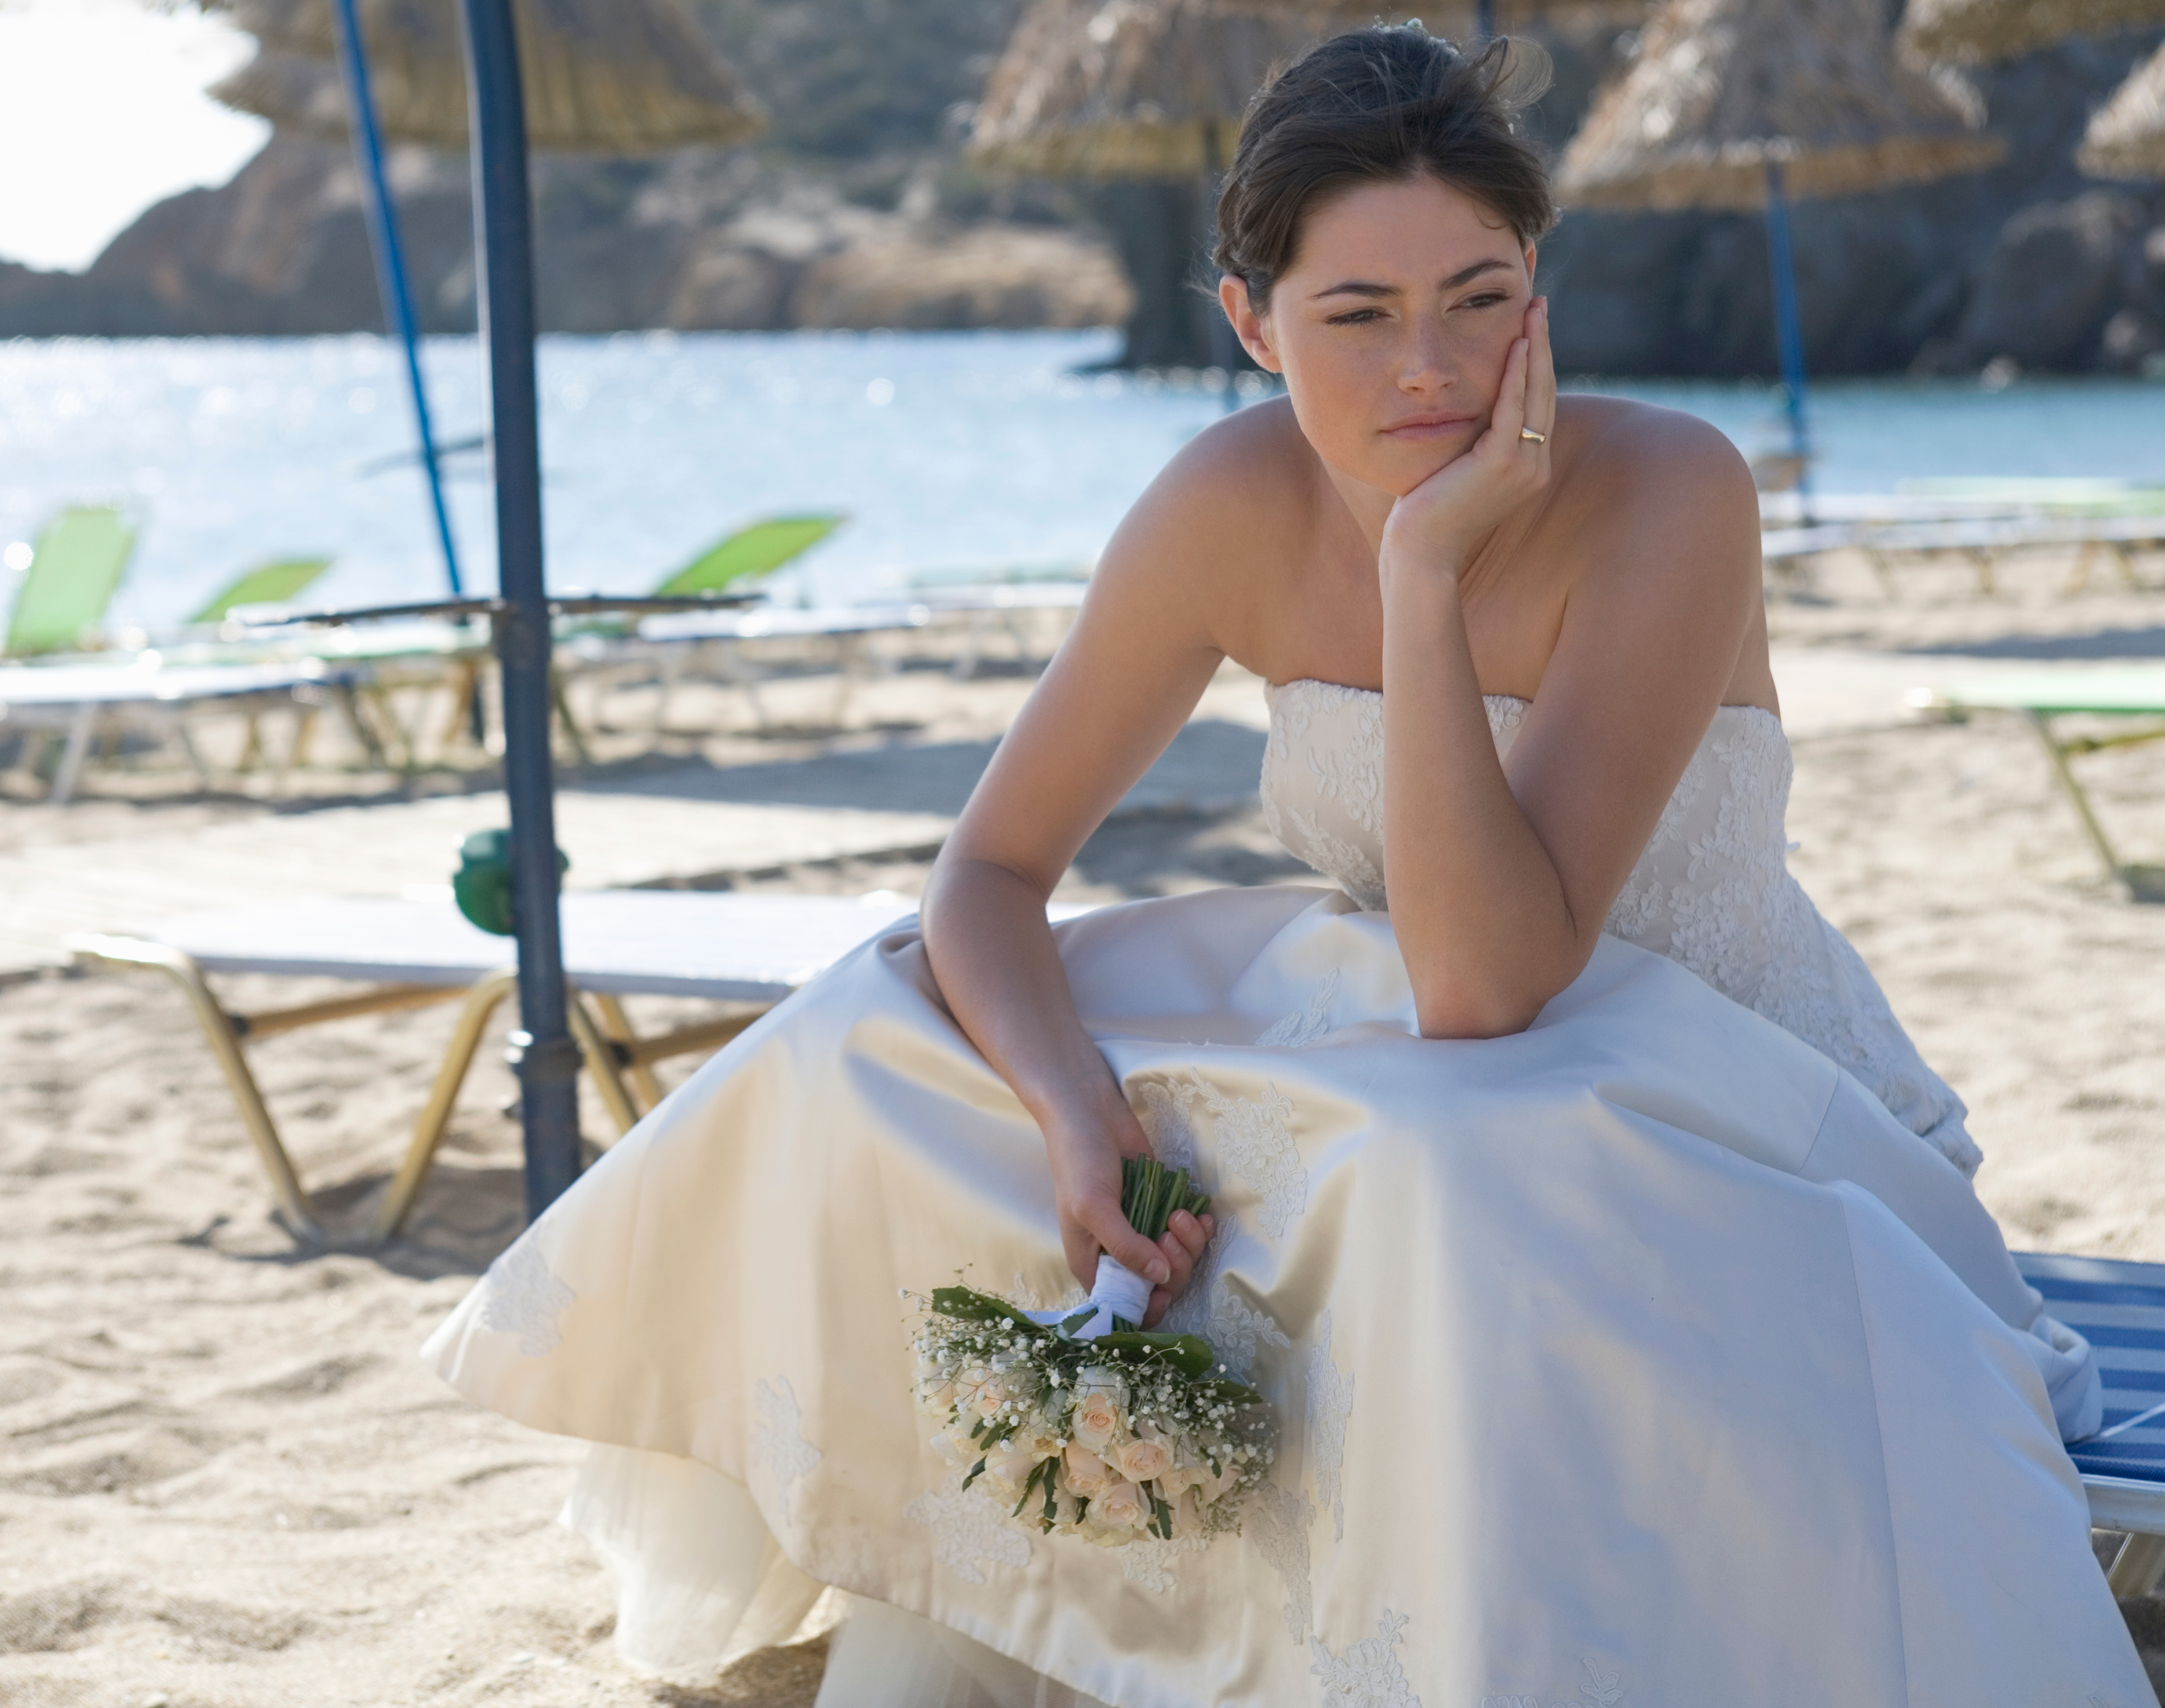 Eine unglückliche Braut sitzt an einem Strand | Quelle: Shutterstock